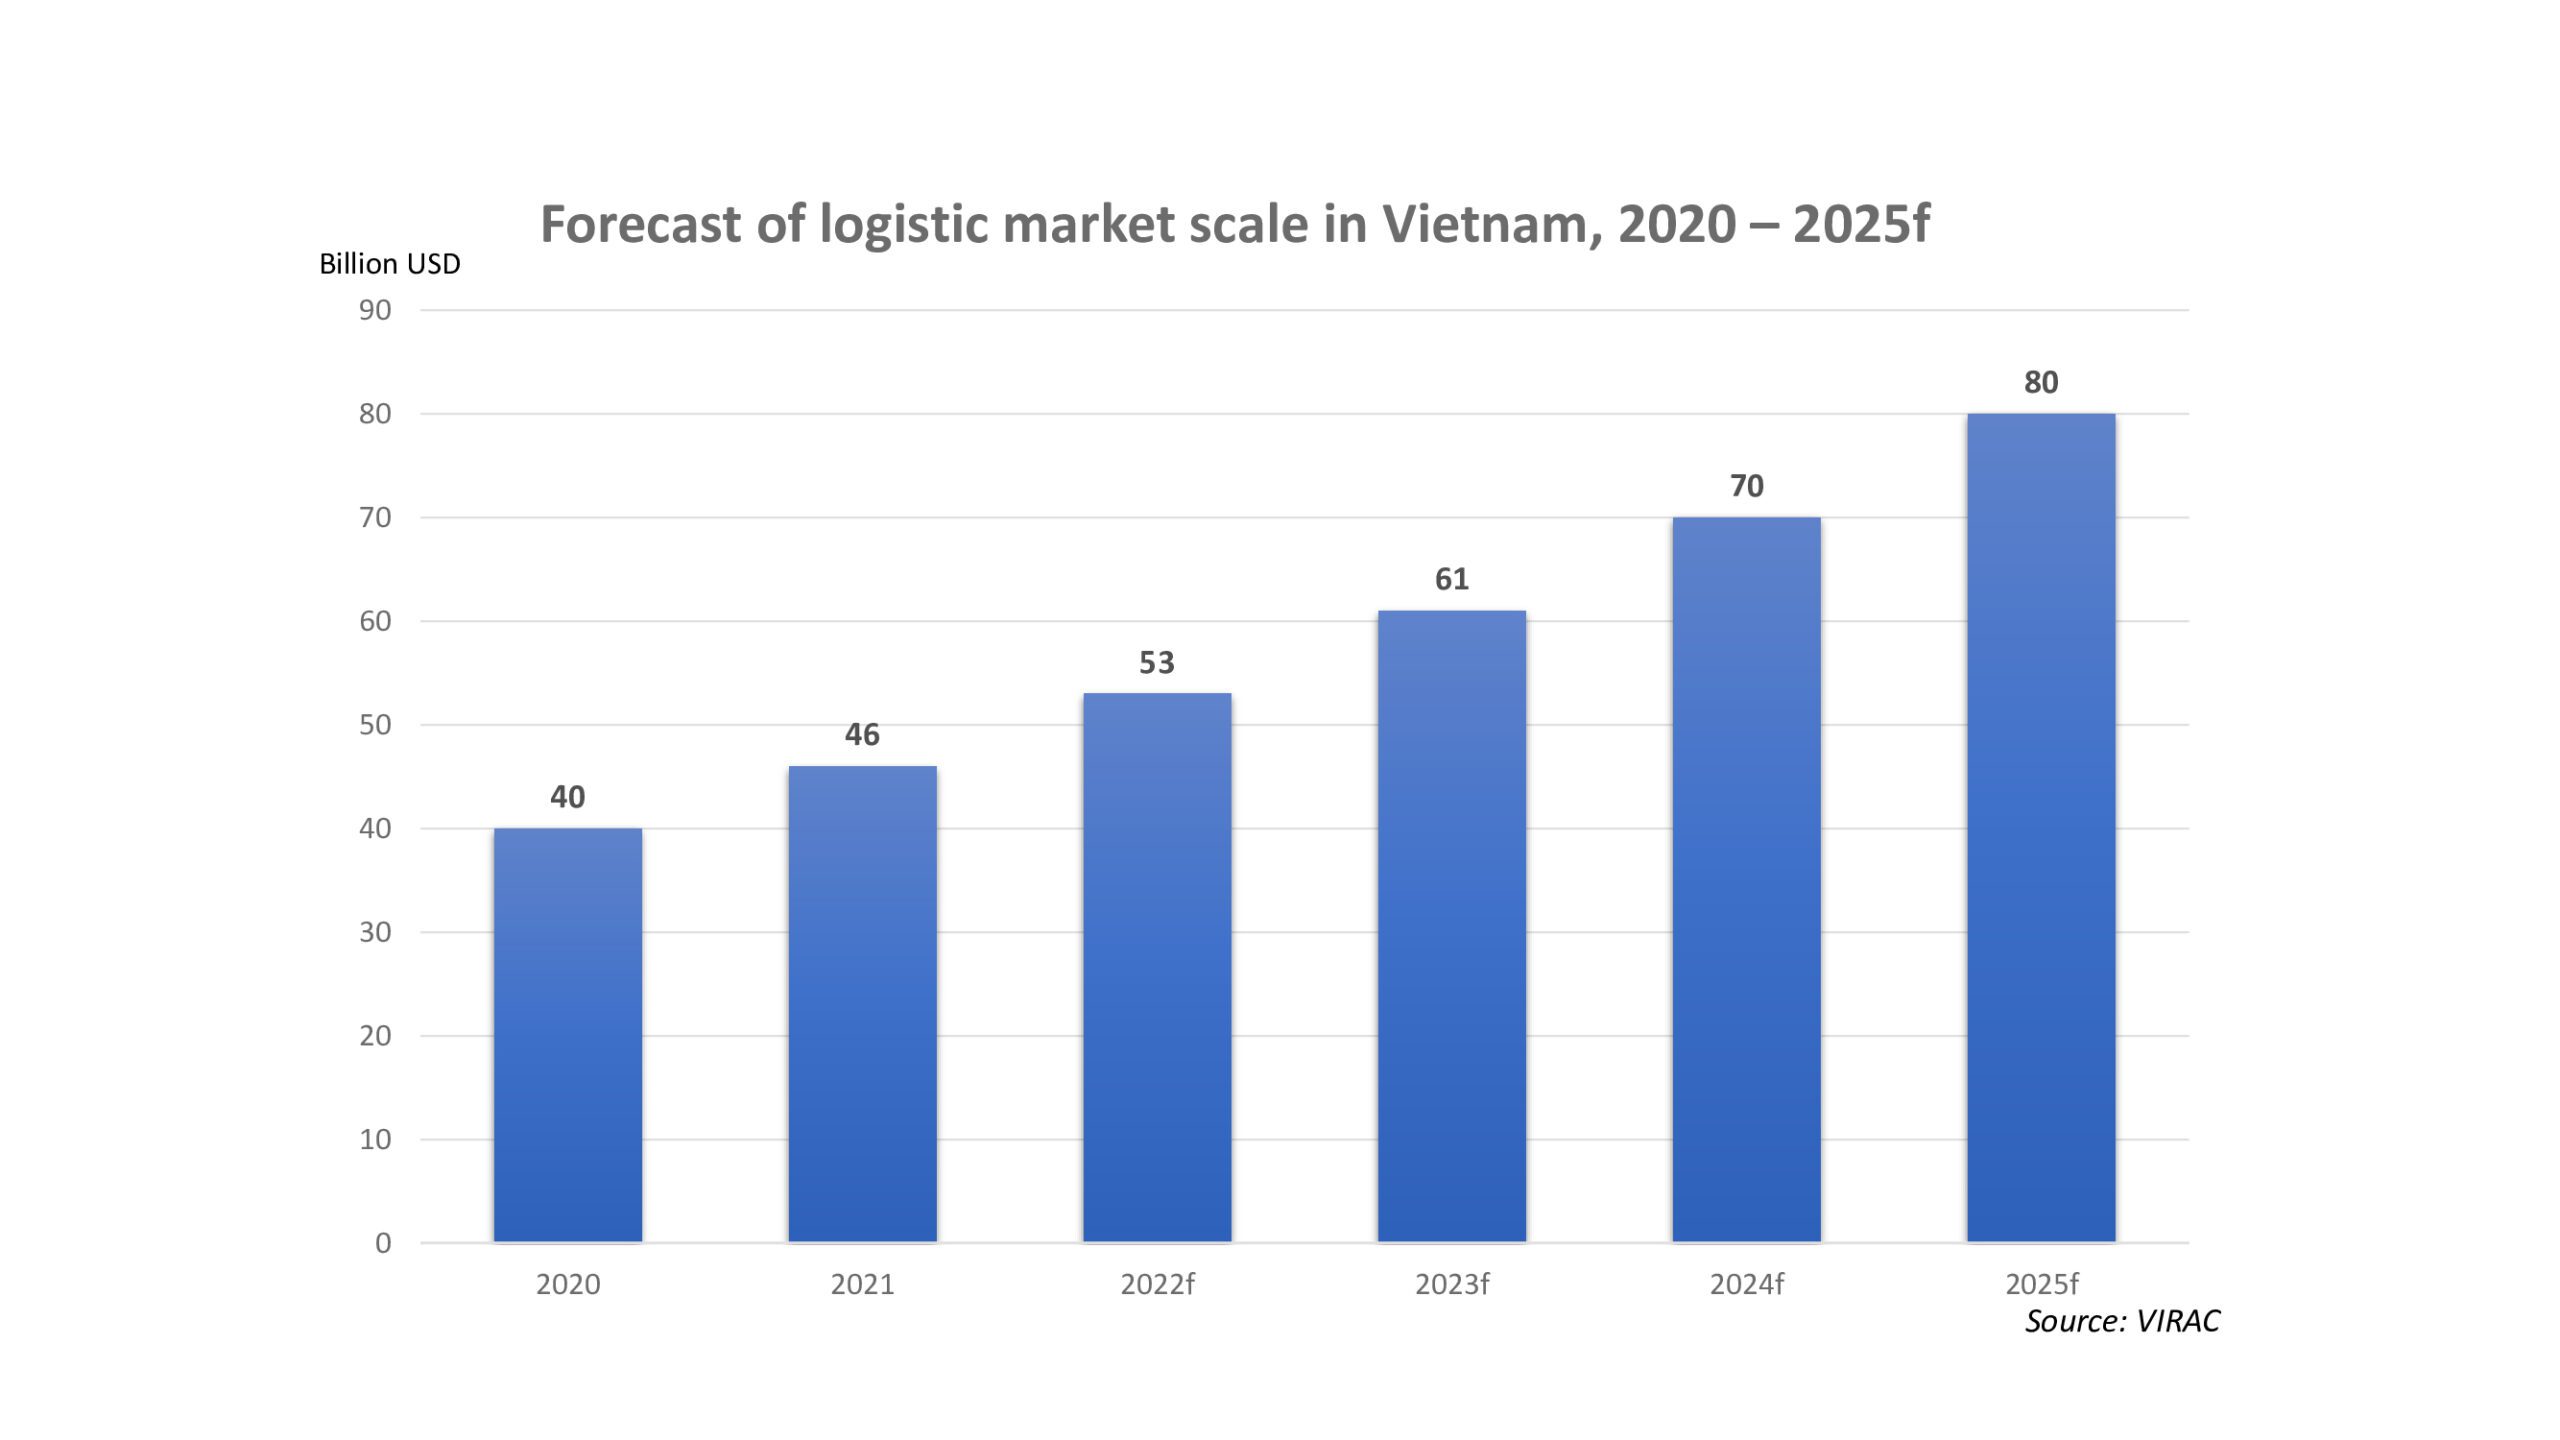 Forecast of logistics market scope in Vietnam, 2020-2025f